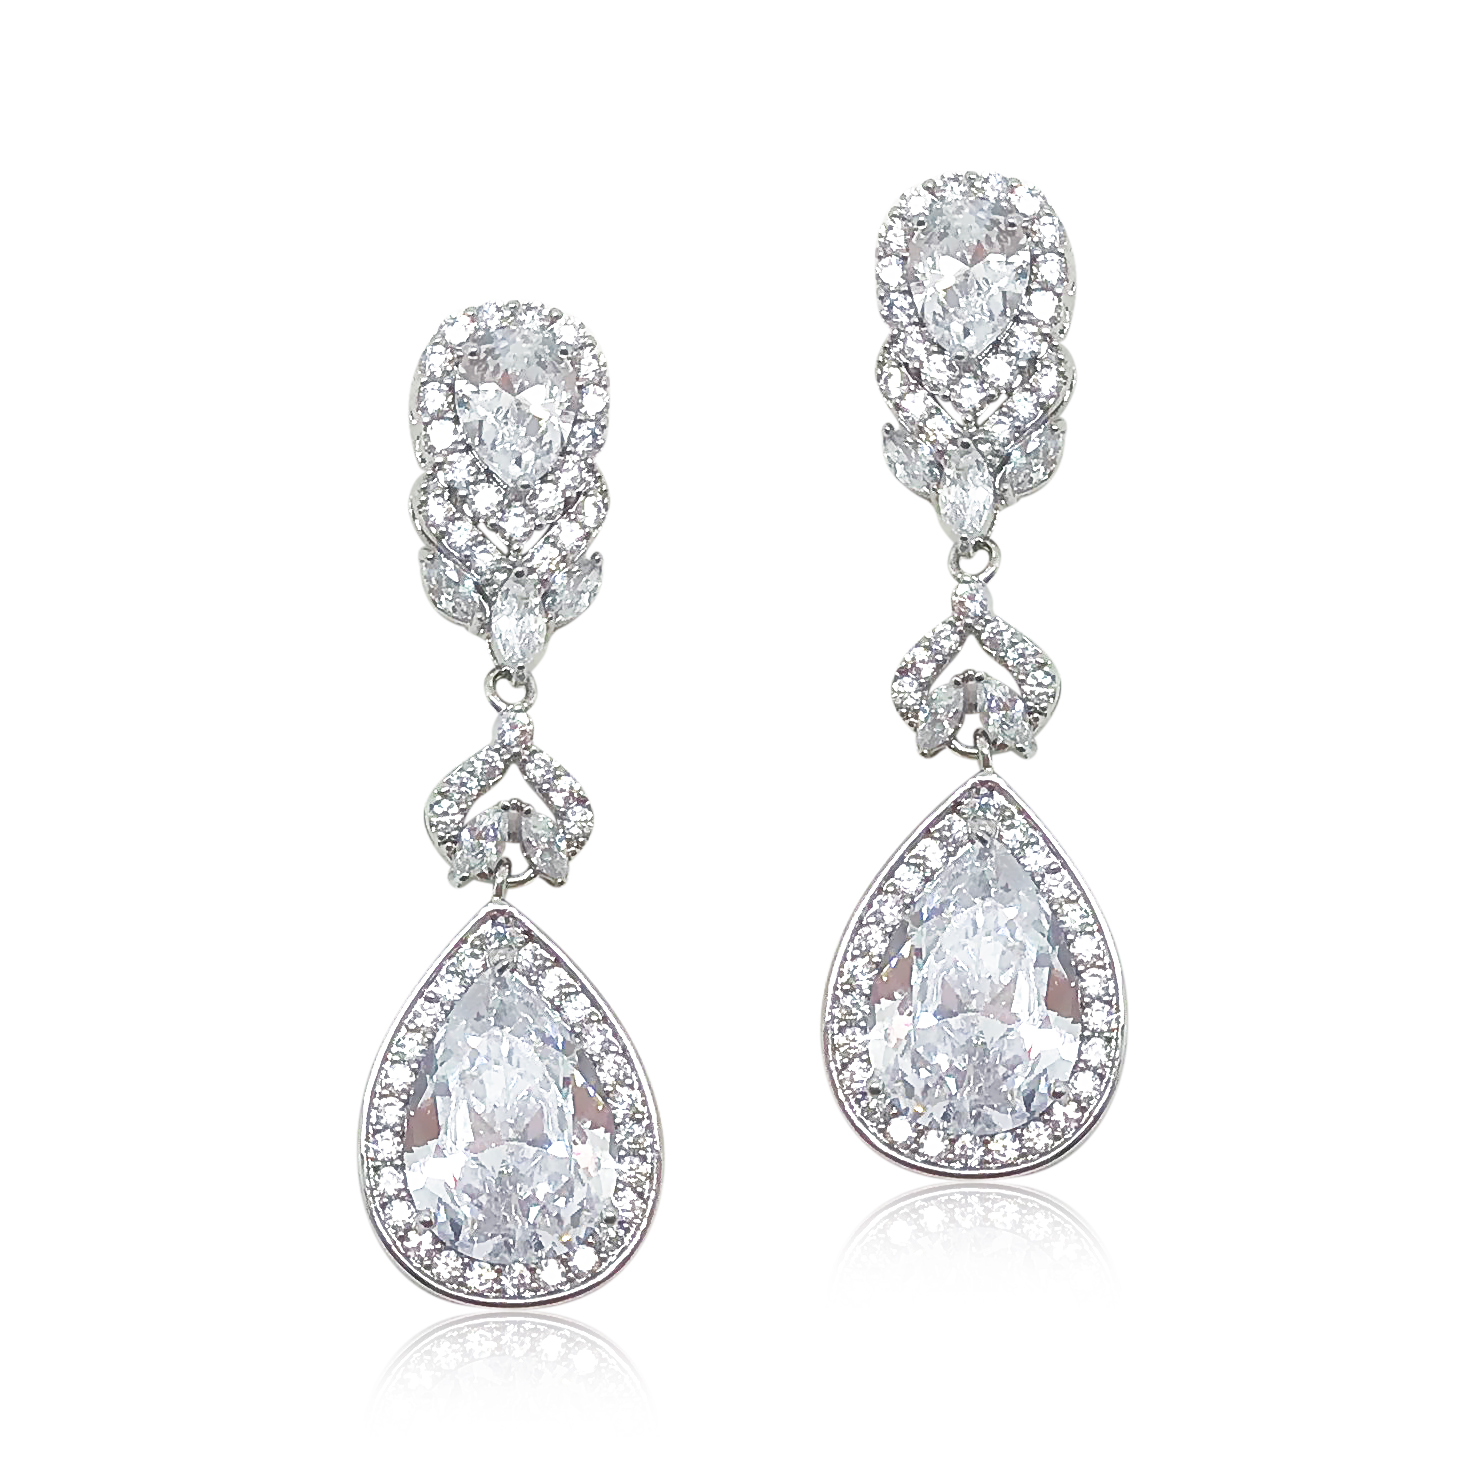 Silver Dangle Earrings|Perosa|Jeanette Maree|Shop Online